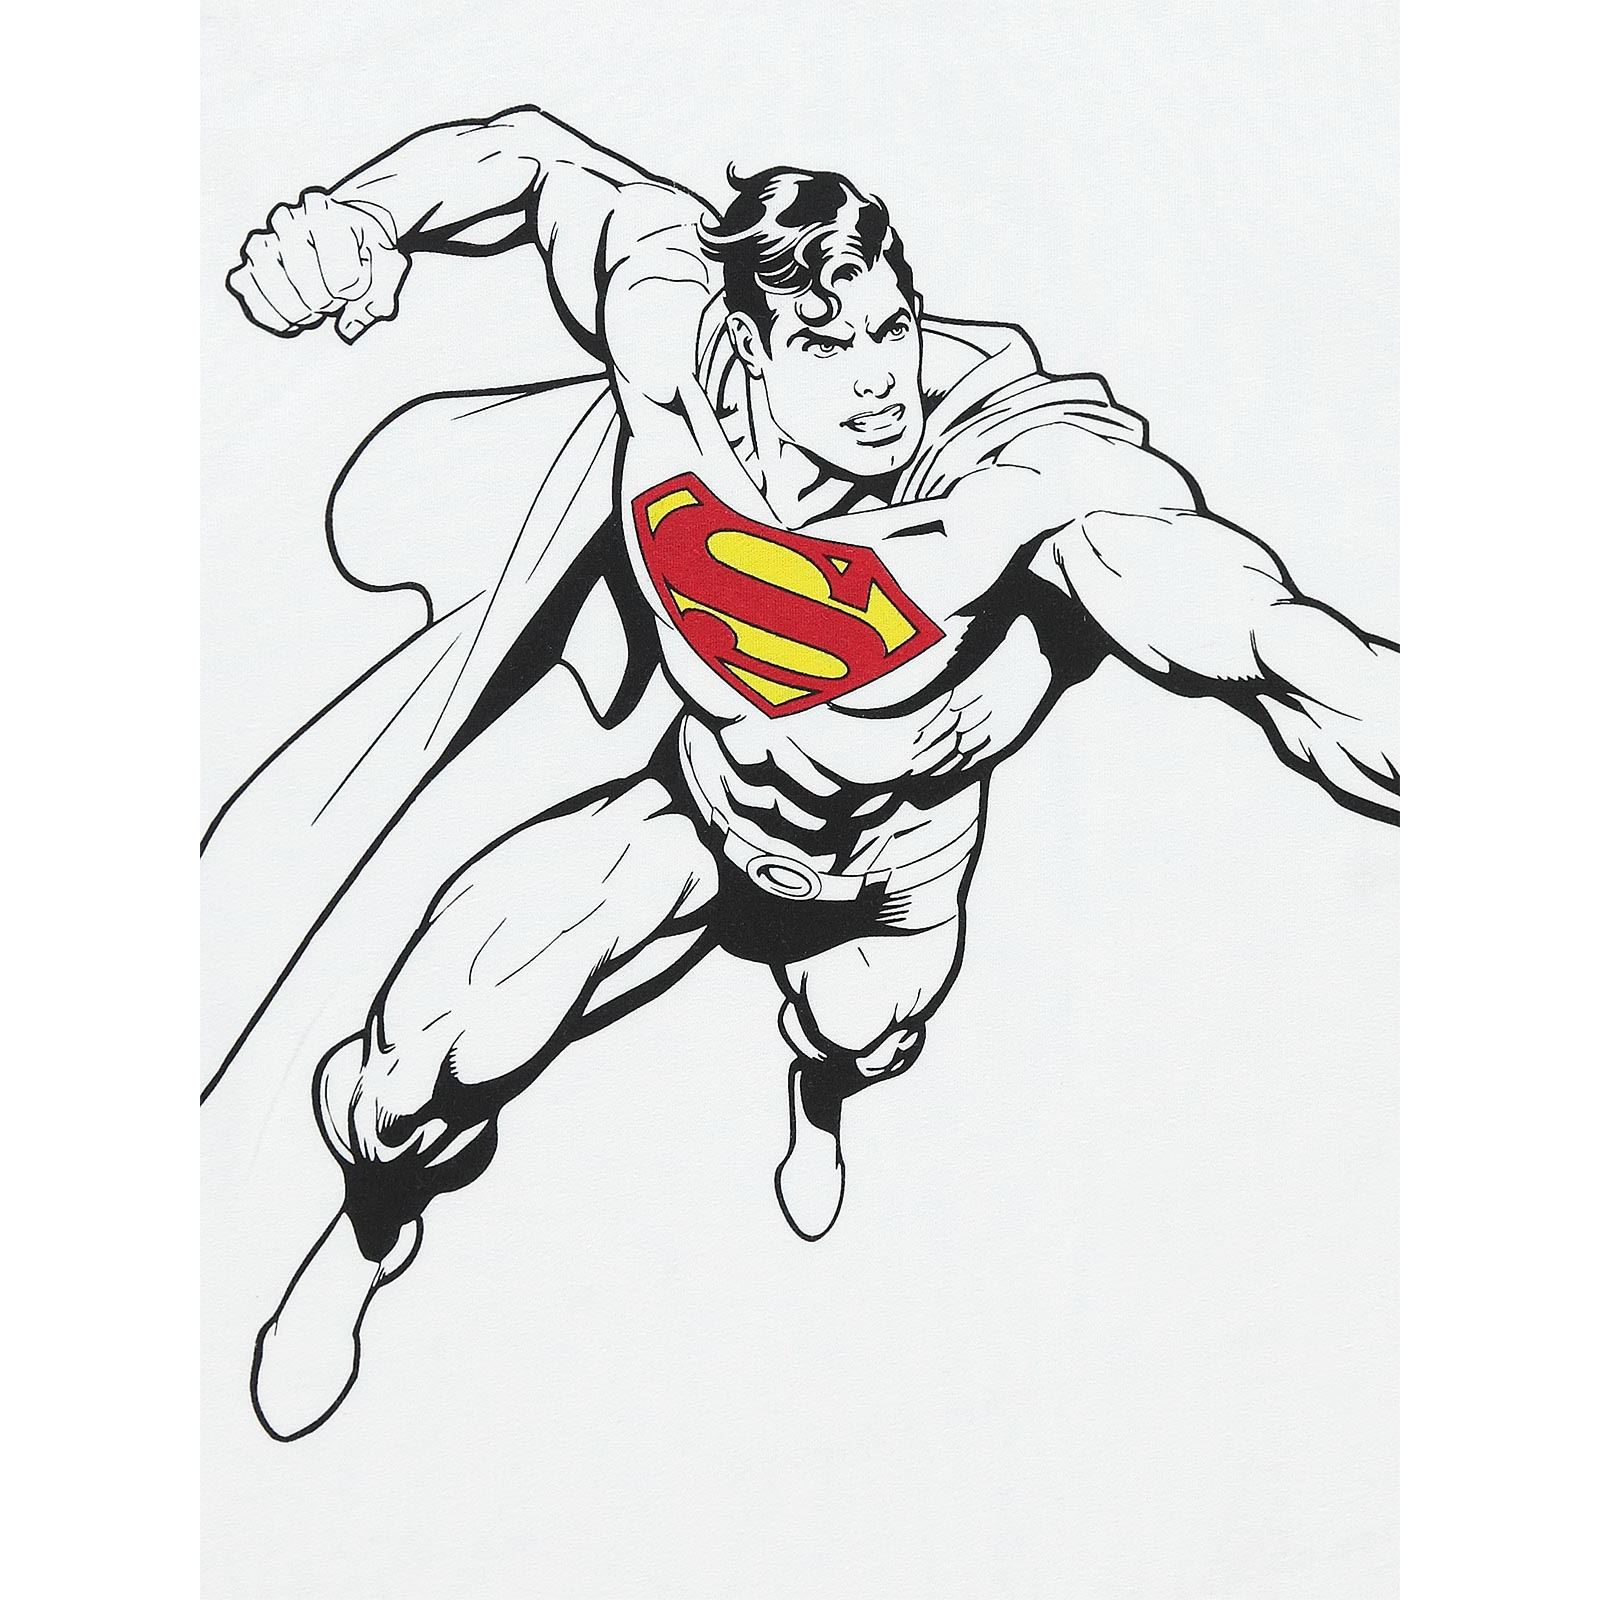 Superman Erkek Çocuk Tişört 2-5 Yaş Beyaz